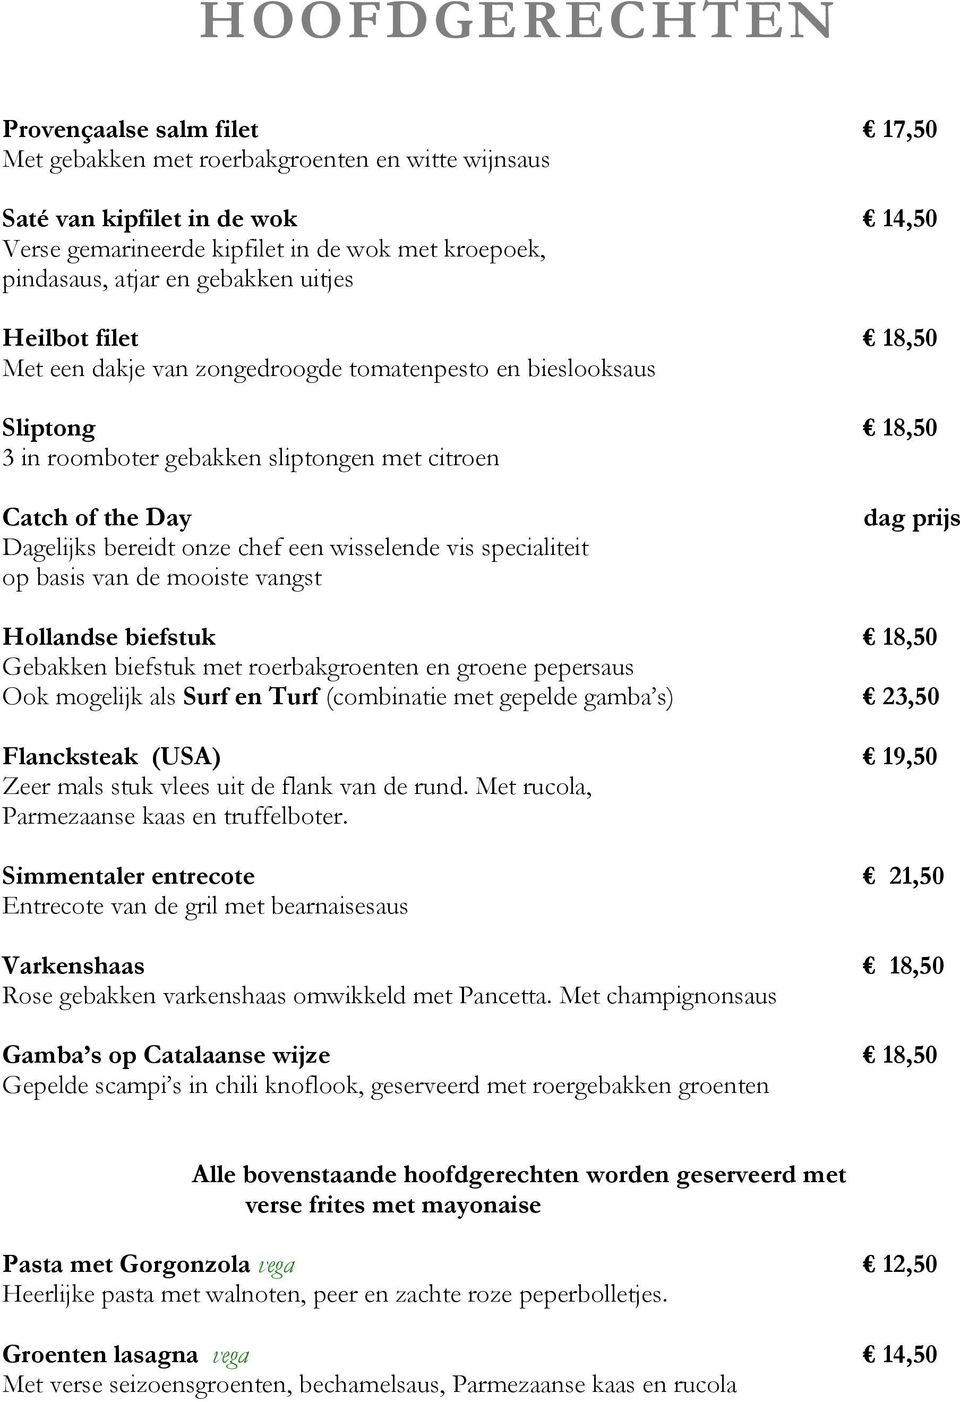 onze chef een wisselende vis specialiteit op basis van de mooiste vangst dag prijs Hollandse biefstuk 18,50 Gebakken biefstuk met roerbakgroenten en groene pepersaus Ook mogelijk als Surf en Turf